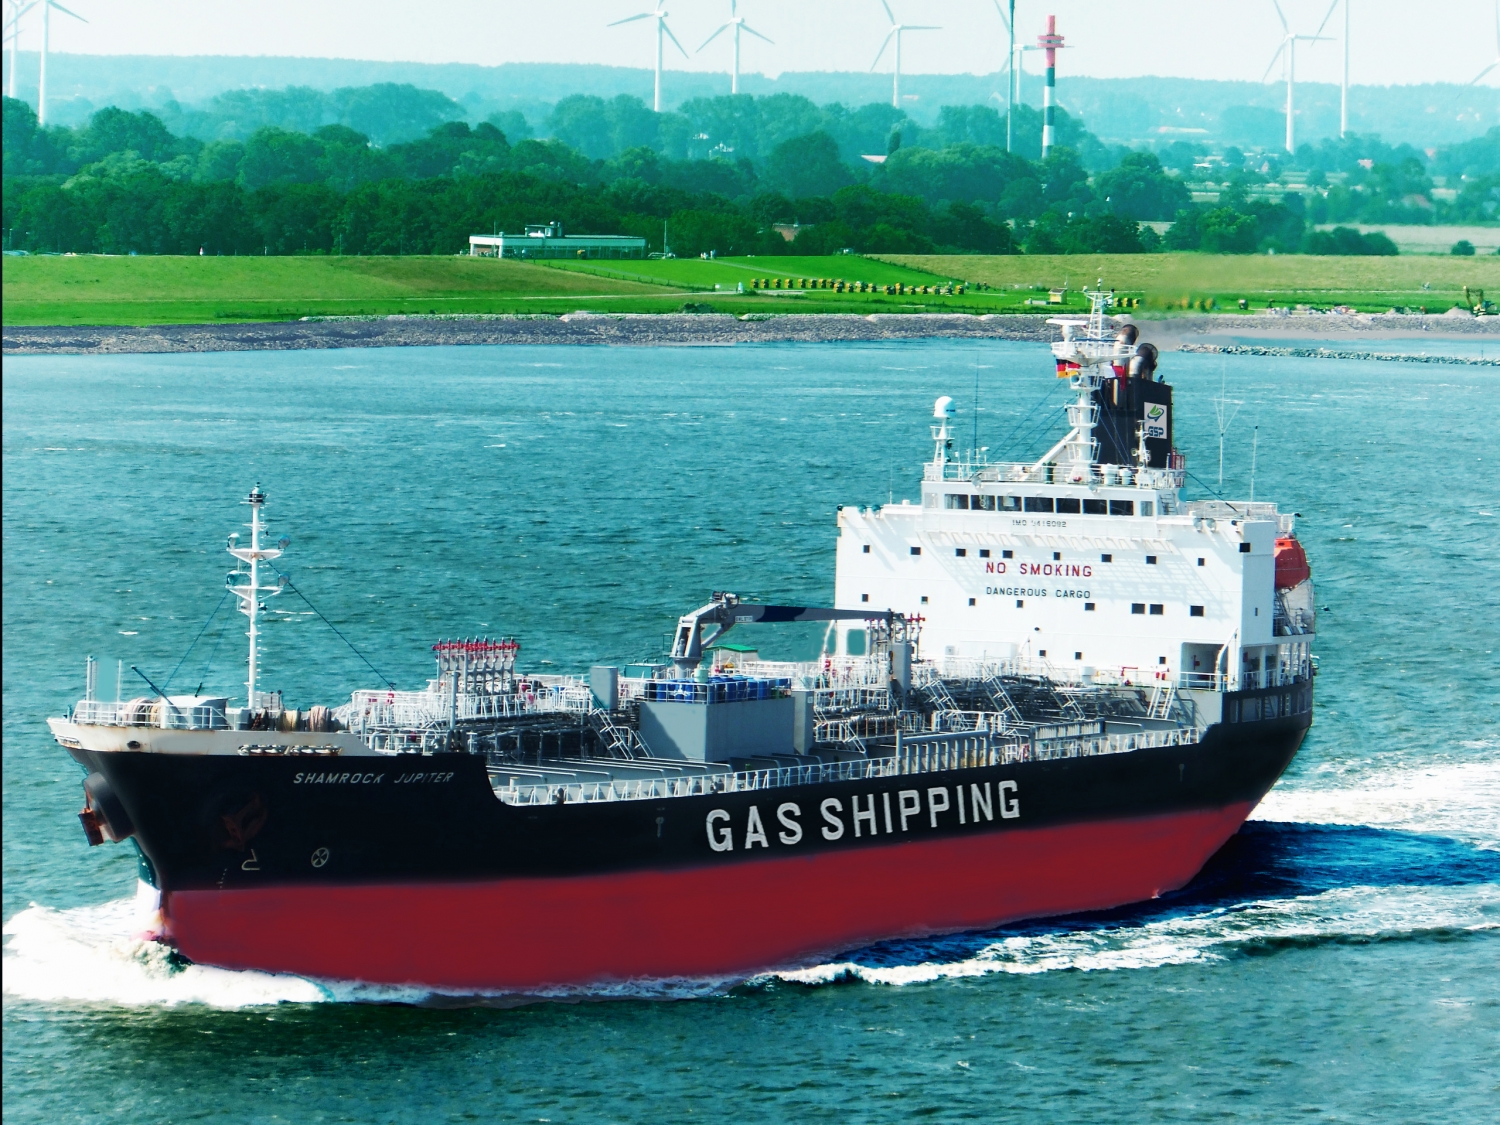 Gas Shipping xác định không ngừng nâng cao chất lượng dịch vụ và năng lực cạnh tranh